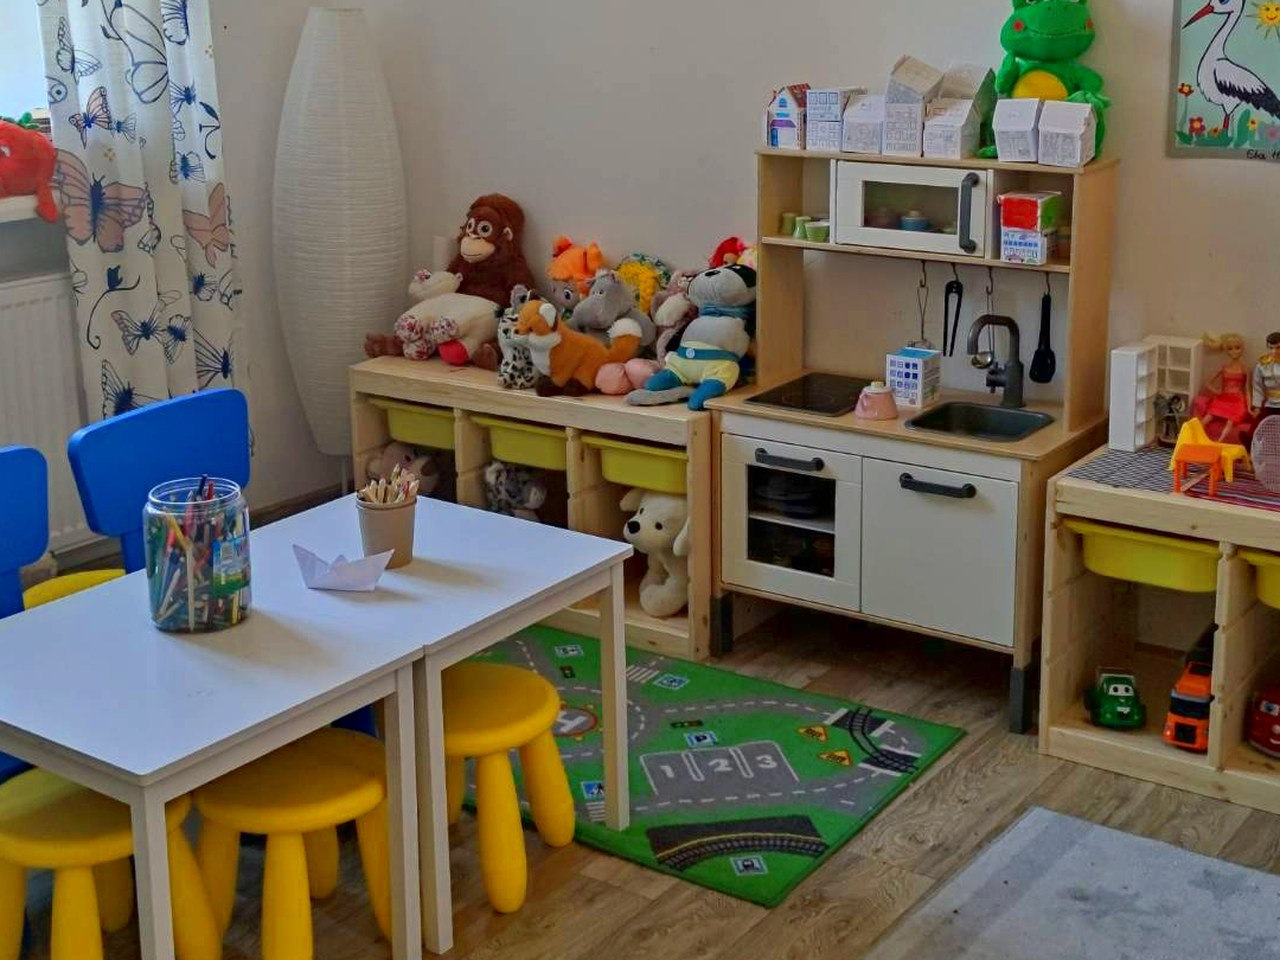 Ikea tworzy bezpieczne przestrzenie dla dzieci przybywających z Ukrainy (Fot. mat. pras.)